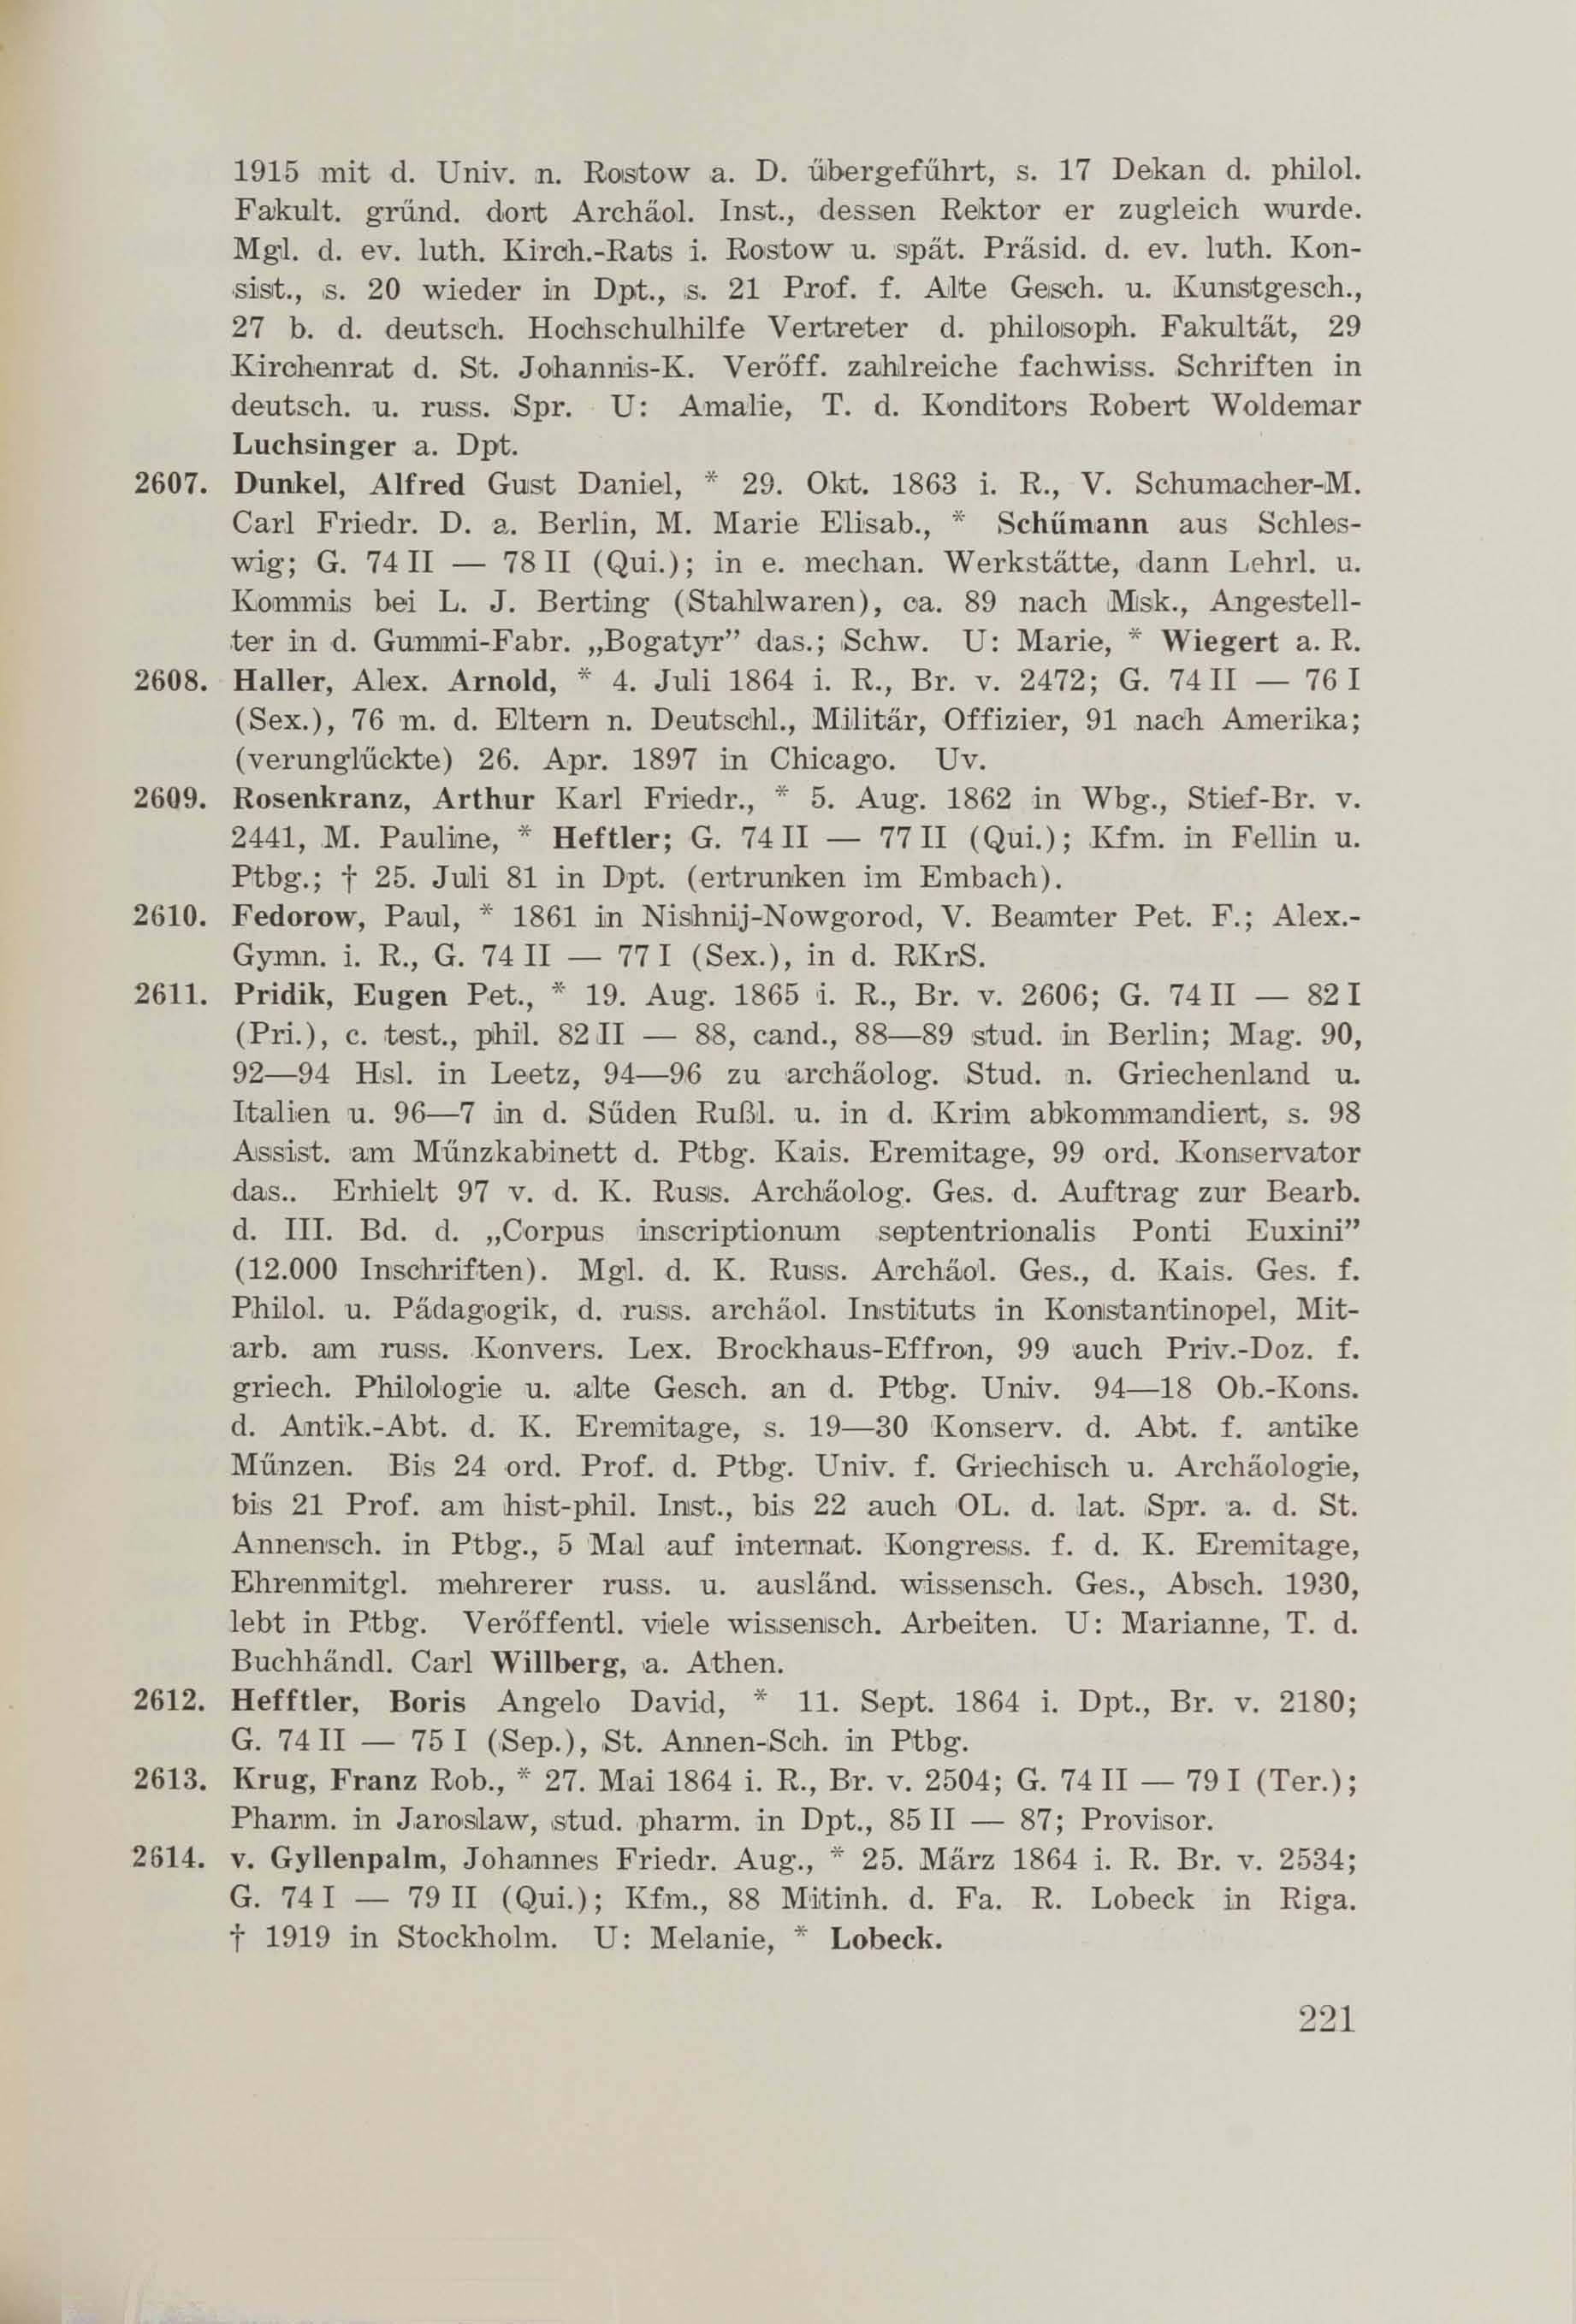 Schüler-Verzeichnis des Revalschen Gouvernements-Gymnasiums 1805–1890 (1931) | 231. (221) Main body of text